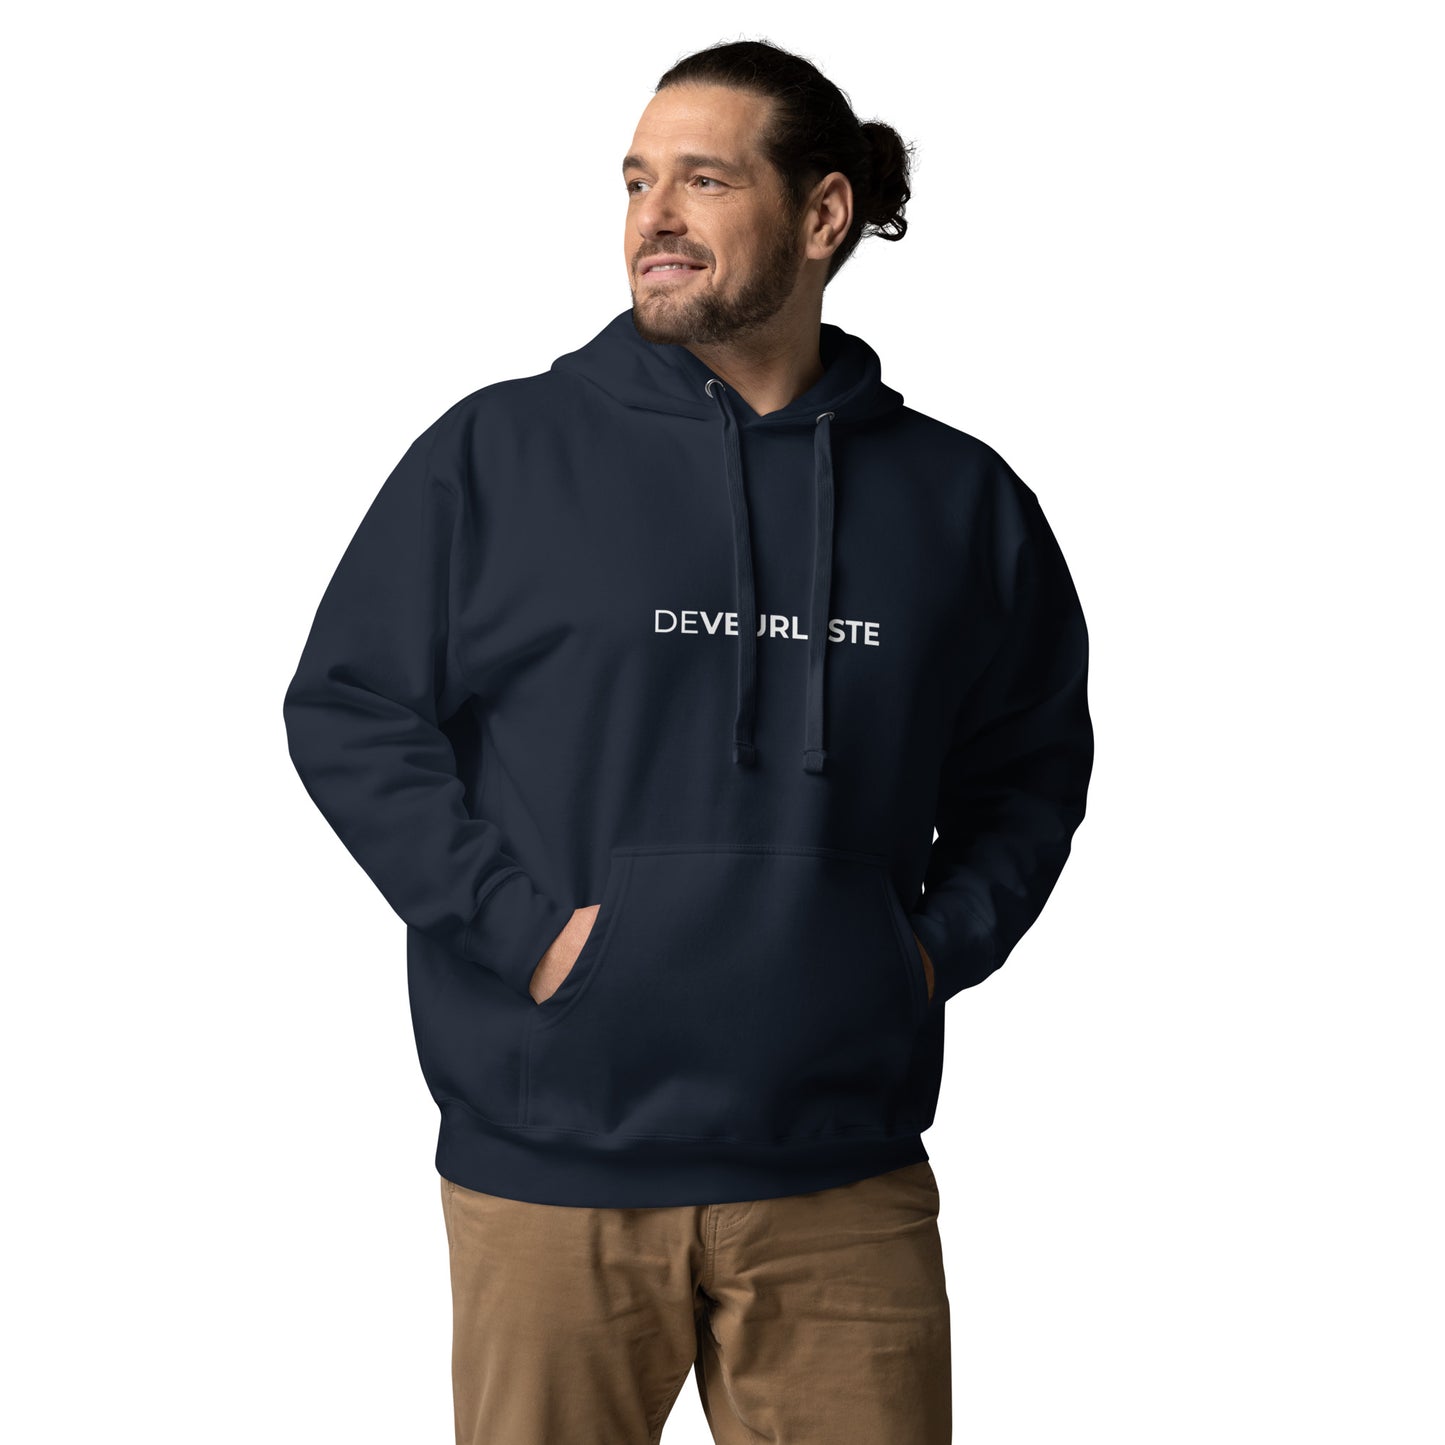 DeVeurleste Premium uniseks hoodie